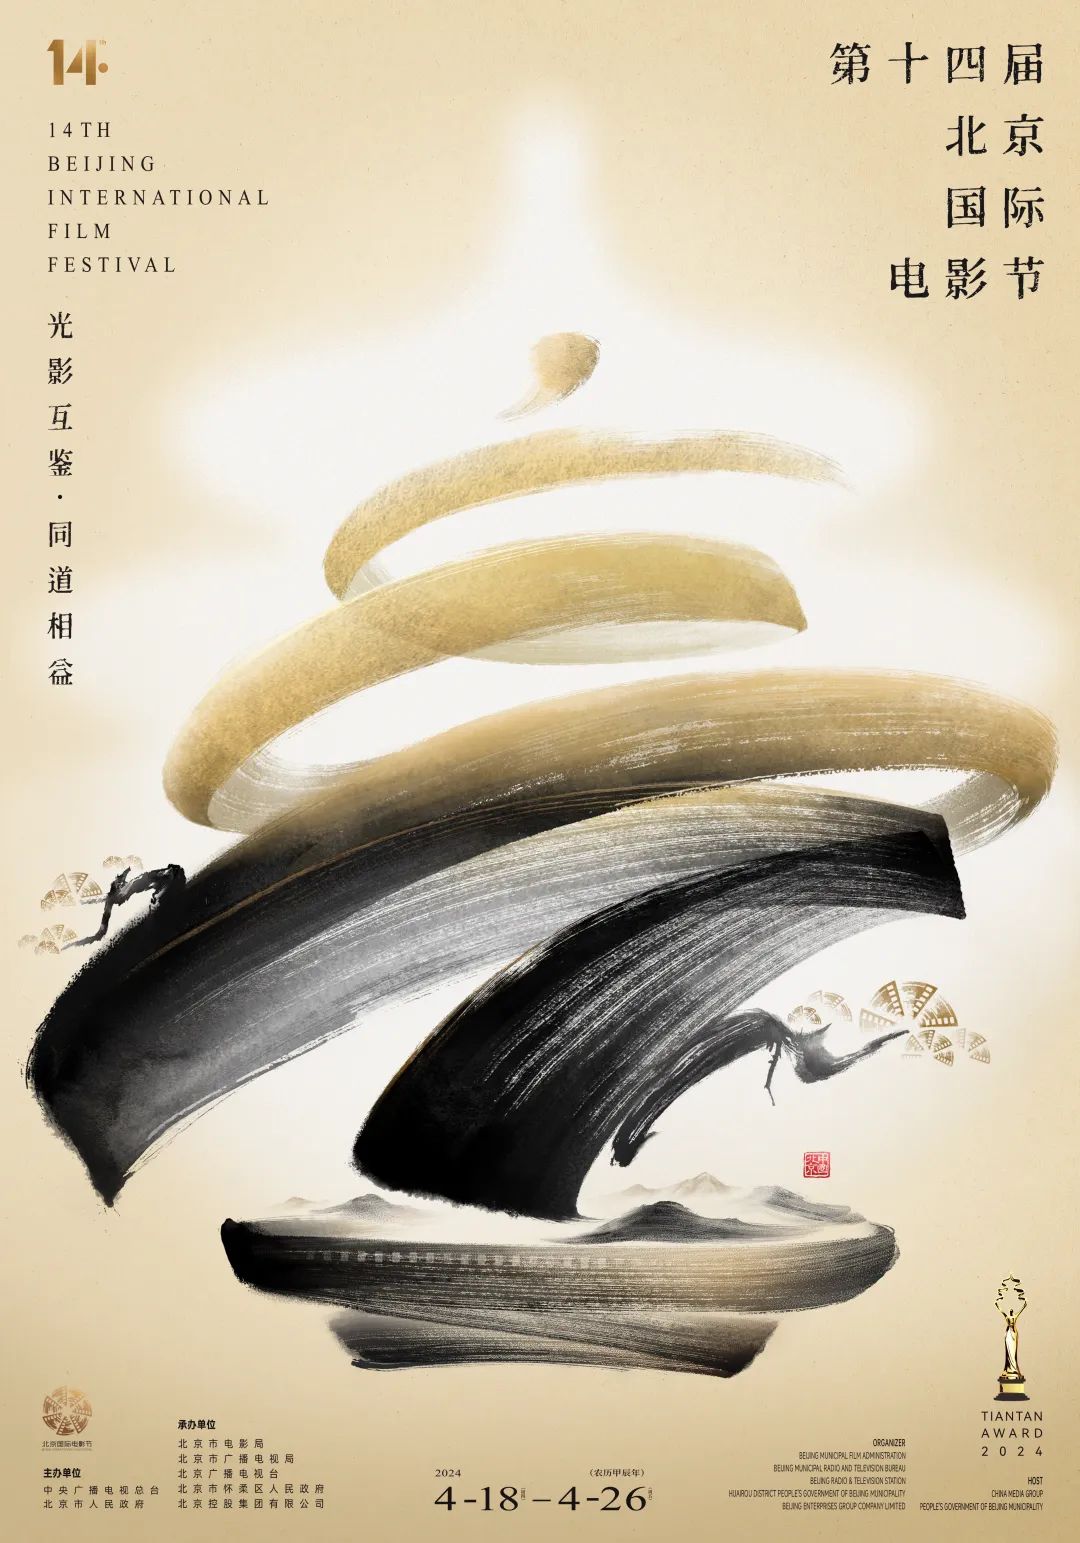 第十四届北京国际电影节新闻发布会举行海报发